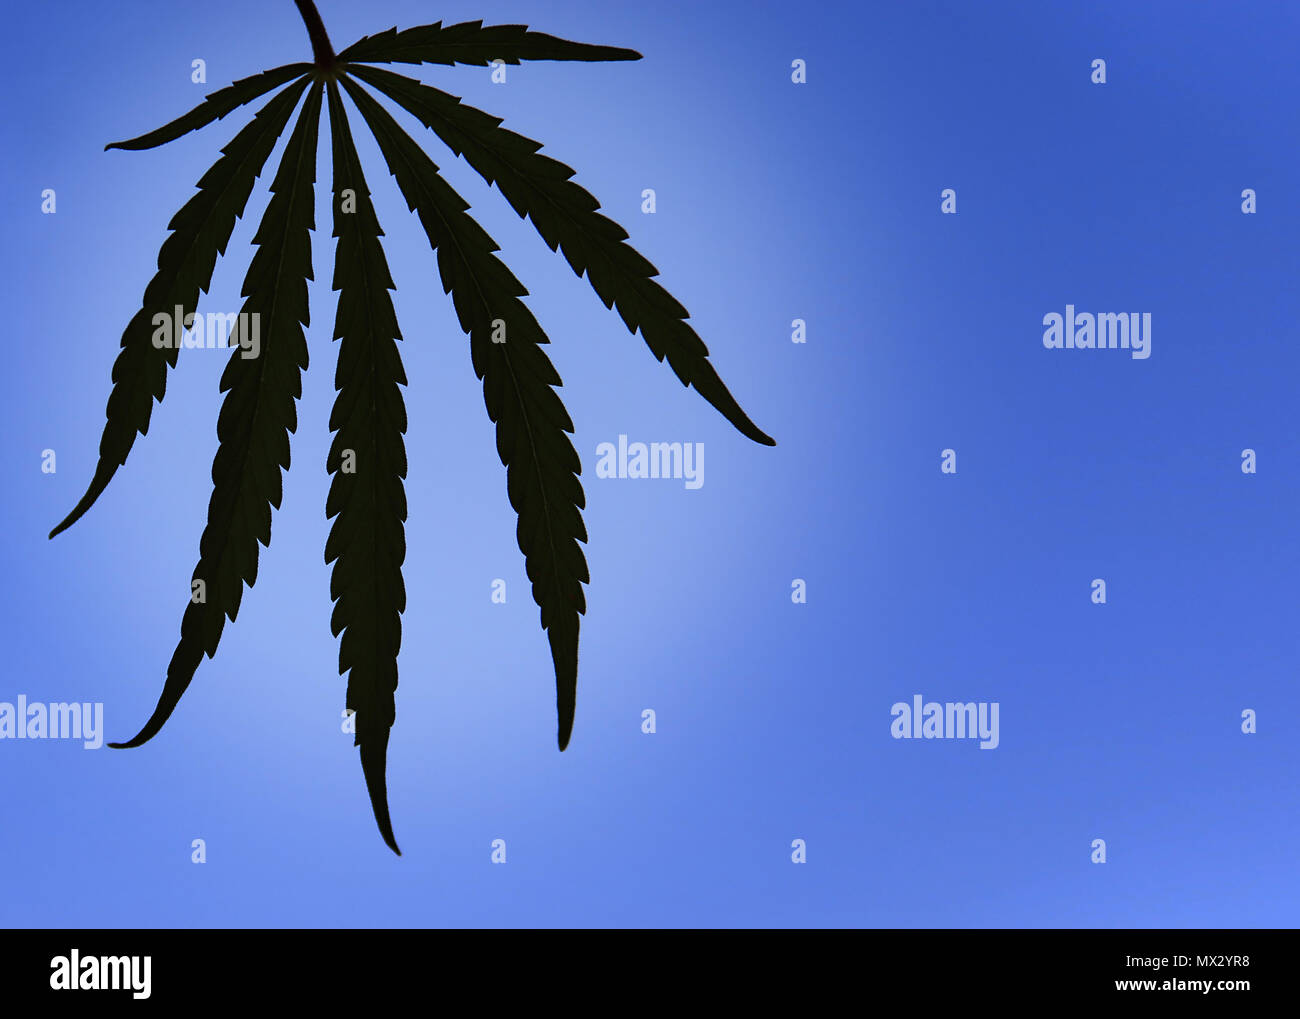 A Cannabis Sativa leaf isolated against a blue sky. Stock Photo